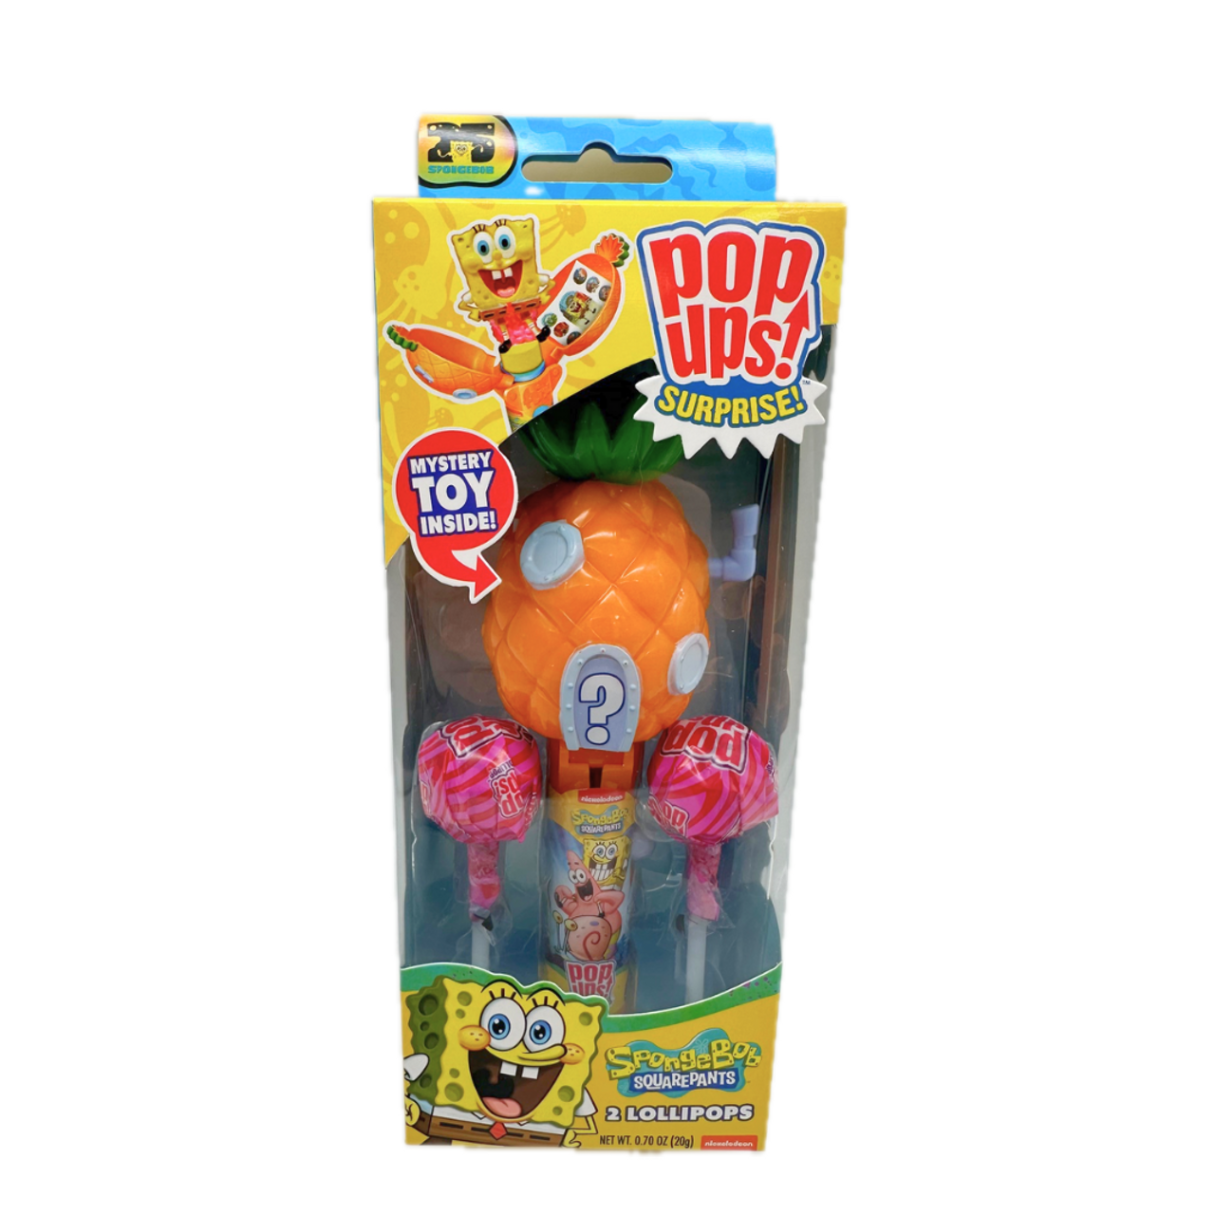 Flix SpongeBob Squarepants Pop Ups Surprise Lollipop 0.70oz - 12ct